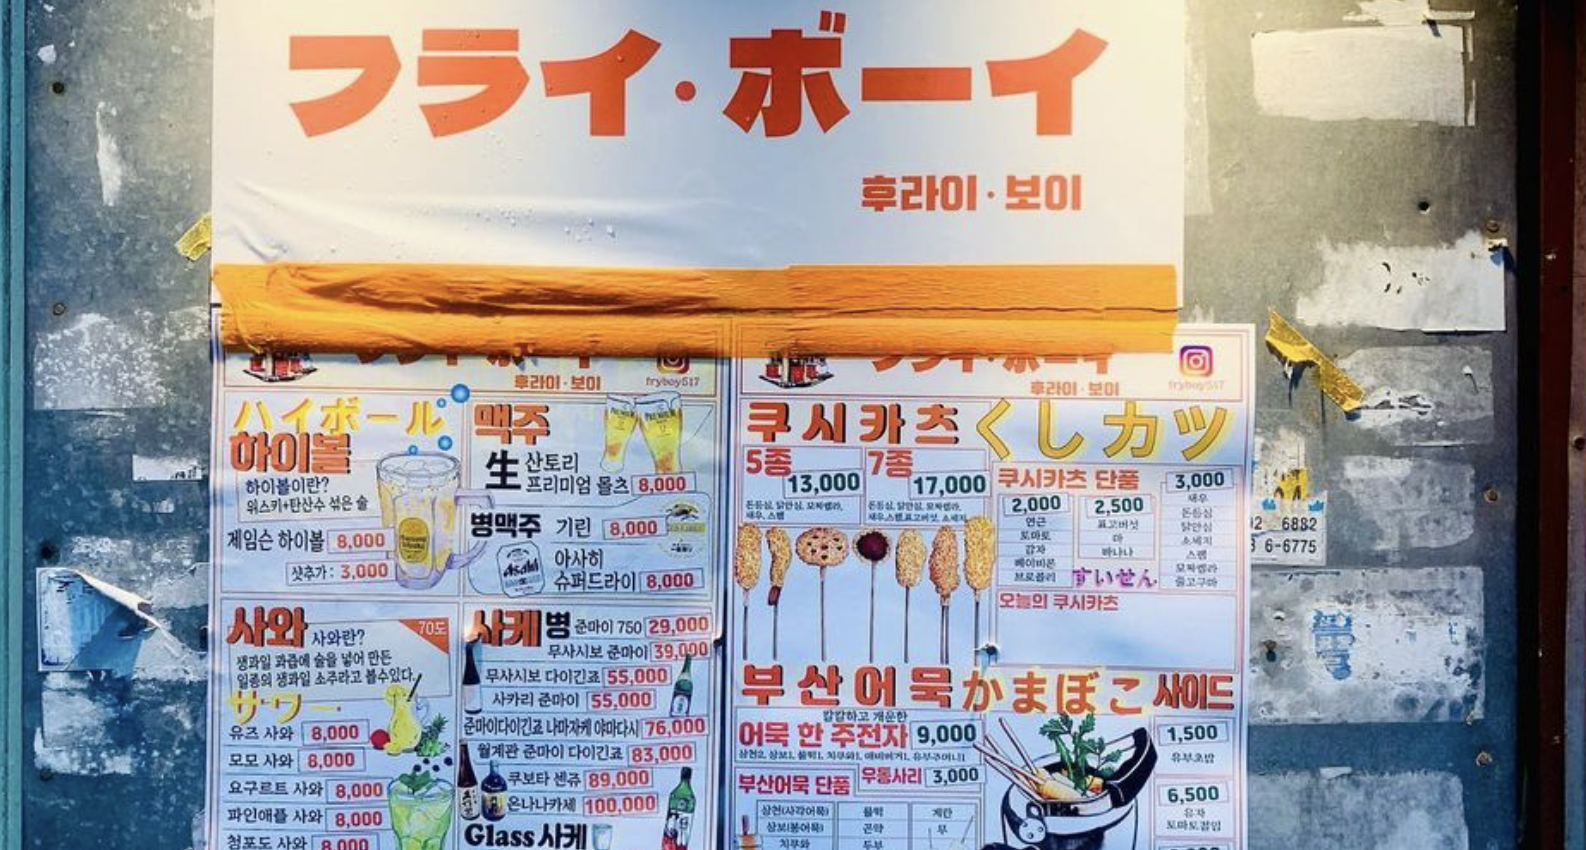 서울 밤문화의 중심을 탐험하다: 프라이보이(후라이보이)에서 즐기는 정통 오사카식 쿠시게 체험하기